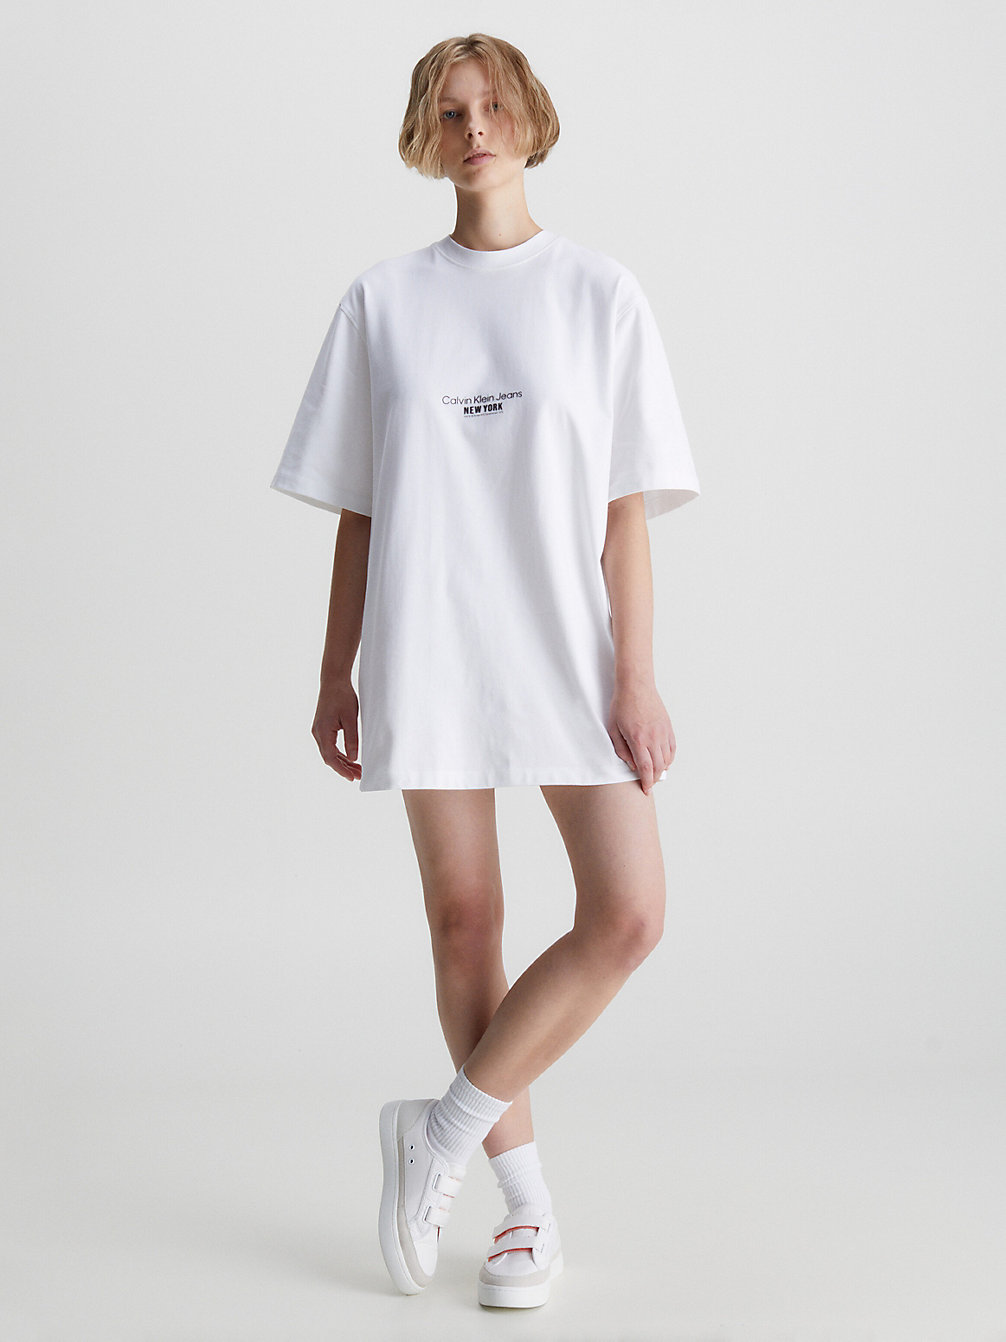 BRIGHT WHITE Embroidered T-Shirt Dress undefined women Calvin Klein